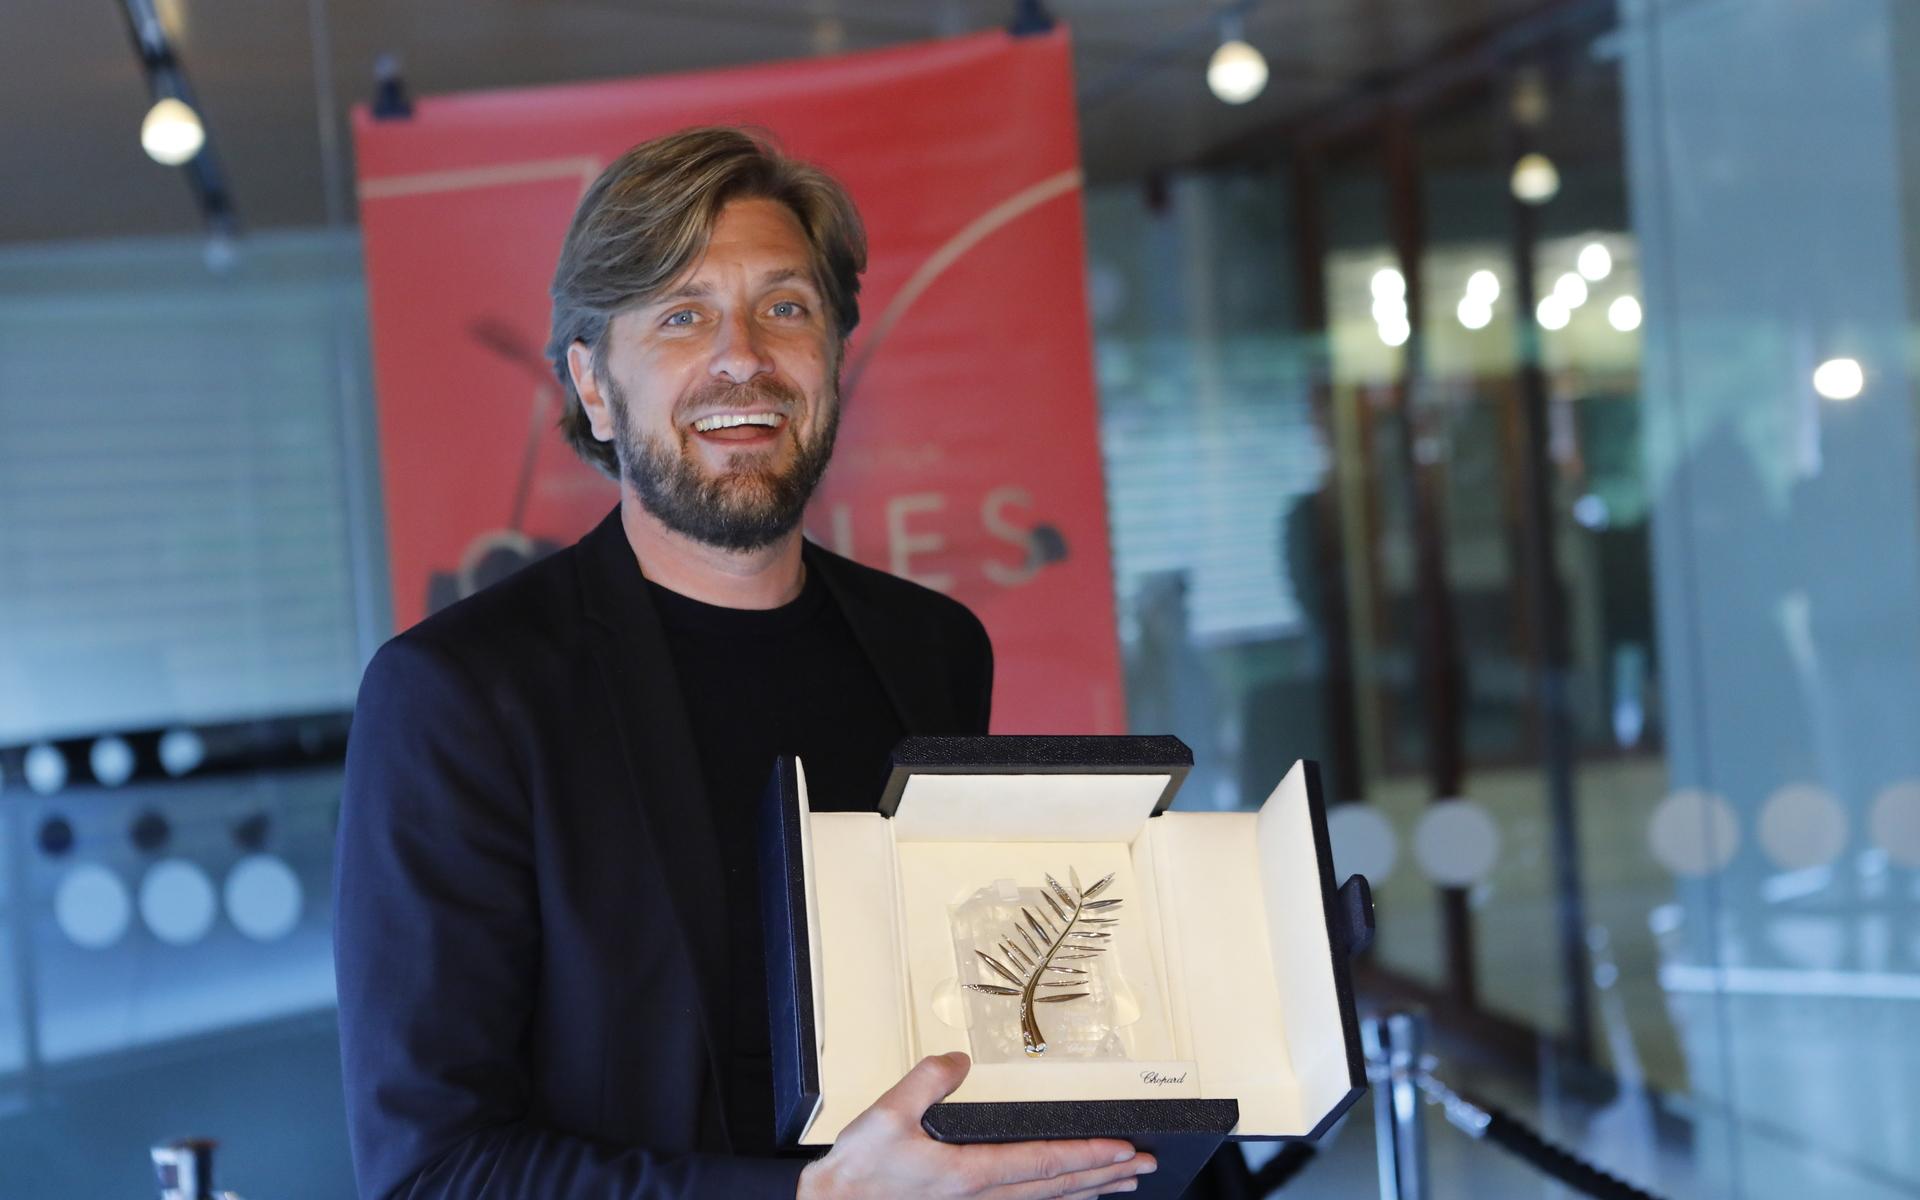 Ruben Östlund visar upp Guldpalmen han vann för ”The Square” 2017. Nu har han en ny vinstchans i Cannes, som valt ut hans nya svarta satir ”Triangle of sadness” till huvudtävlan. Men konkurrensen är hård...